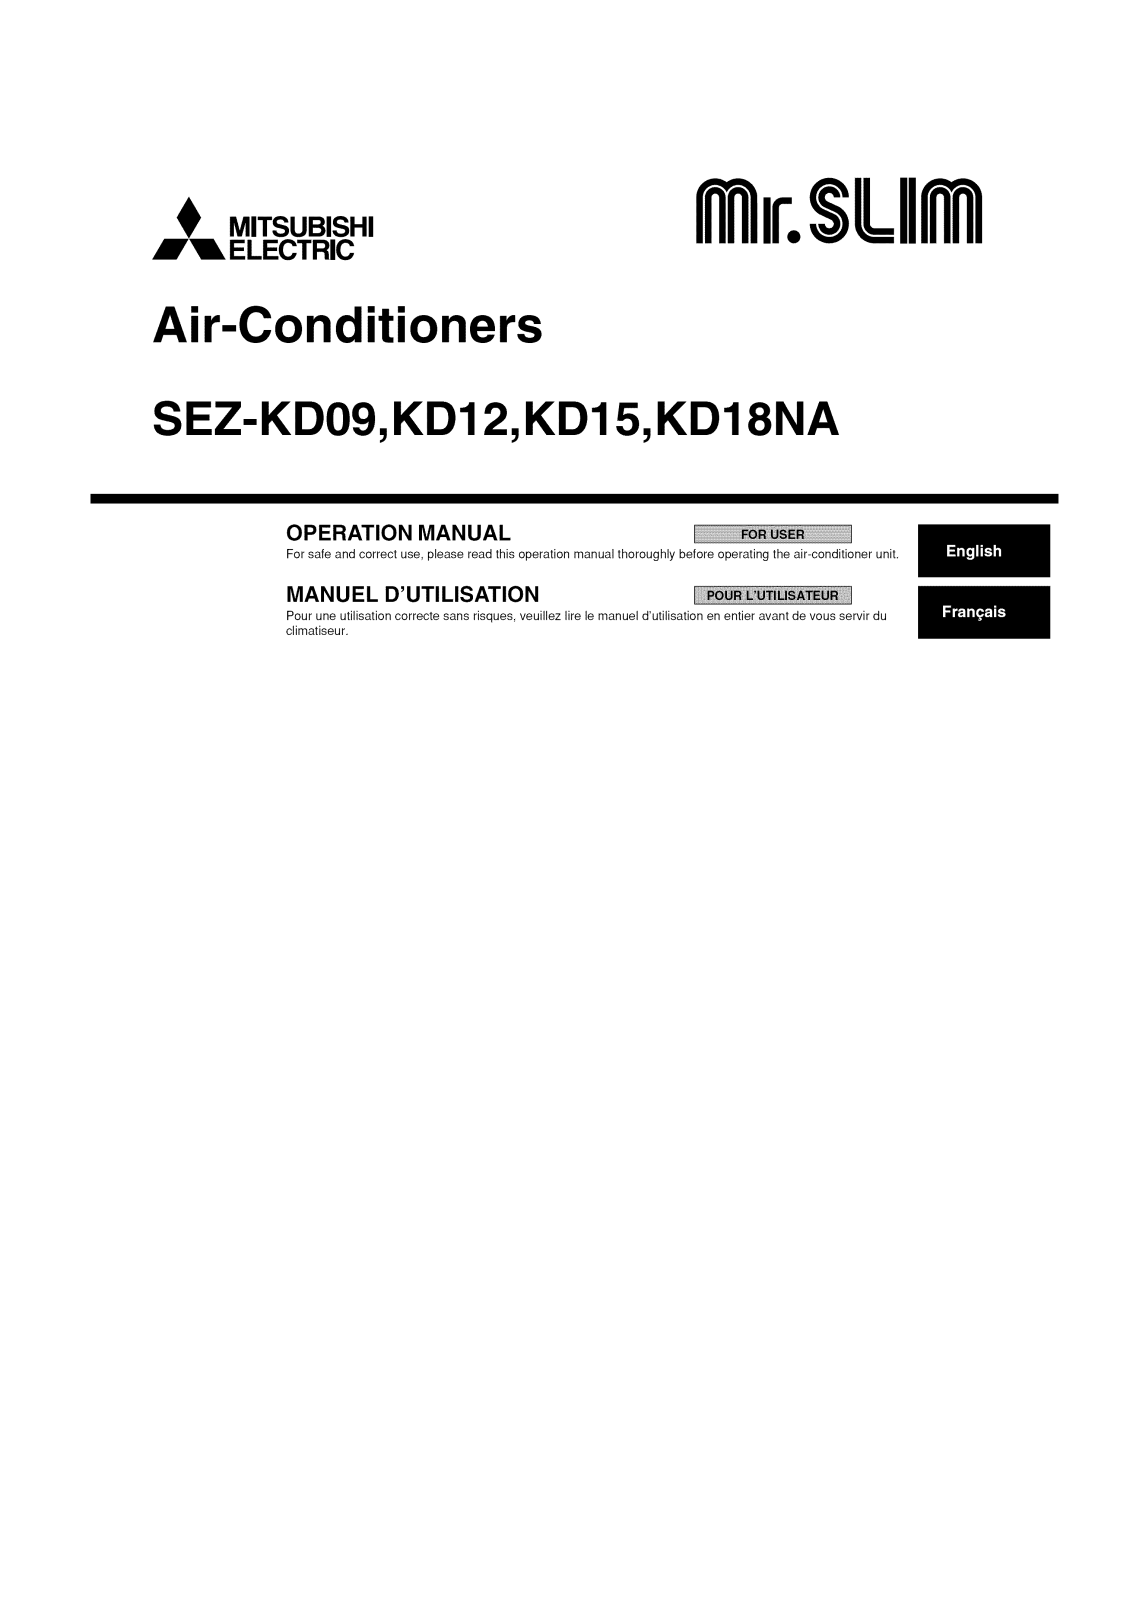 Mitsubishi SEZ-KD09NA4, SEZ-KD18NA4, SEZ-KD18NA, SEZ-KD15NA4, SEZ-KD15NA Owner’s Manual